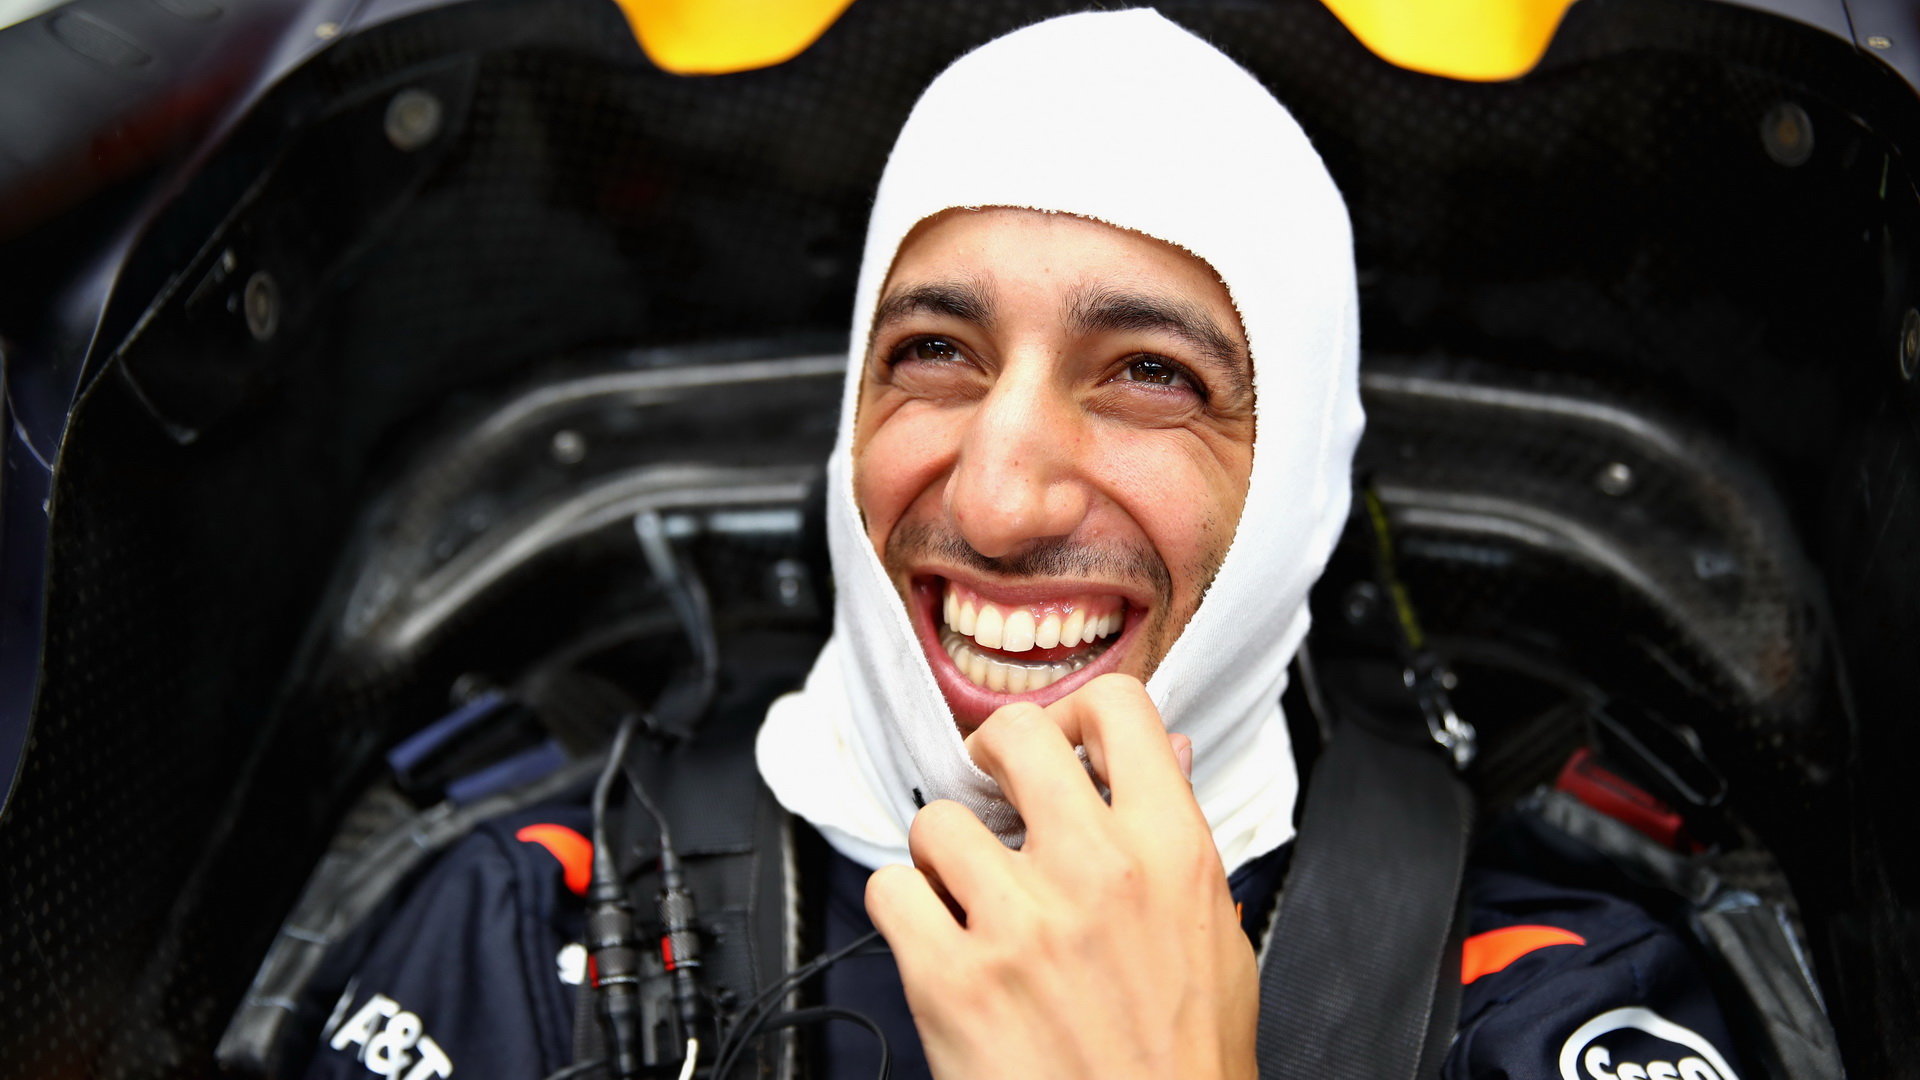 Nová specifikace motoru je pro Ricciarda před příští sezónou povzbuzením